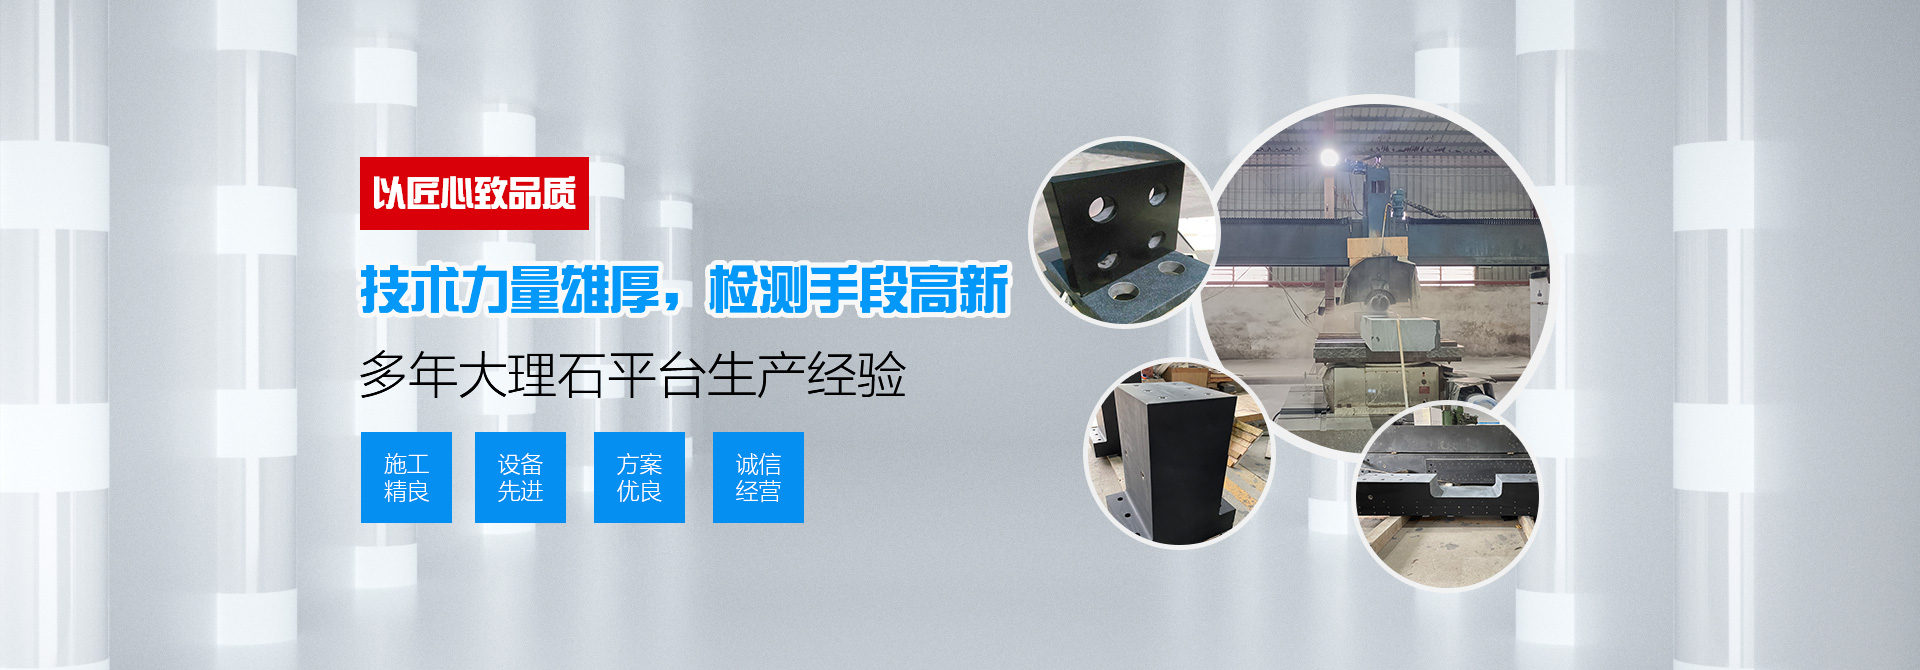 惠州市宏磊太阳成集团tyc7111cc·(中国)官方网站设备有限公司